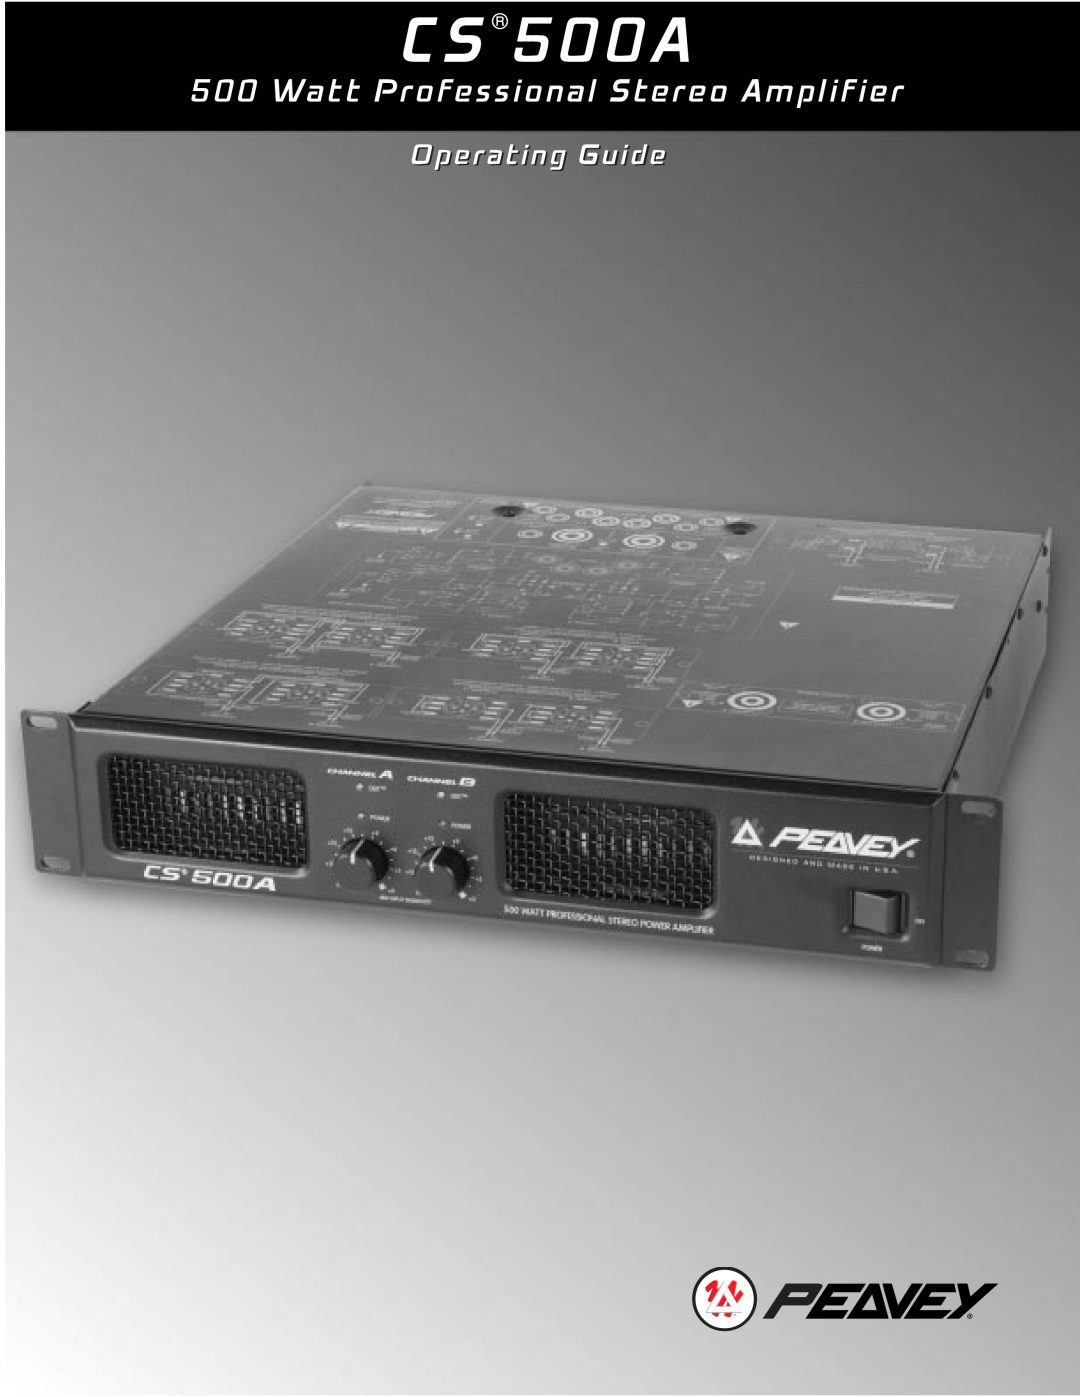 Peavey CS 500A, CS 500S, CS 800S, 80304543 manual Watt Professional Stereo Amplifier, Operating Guide 